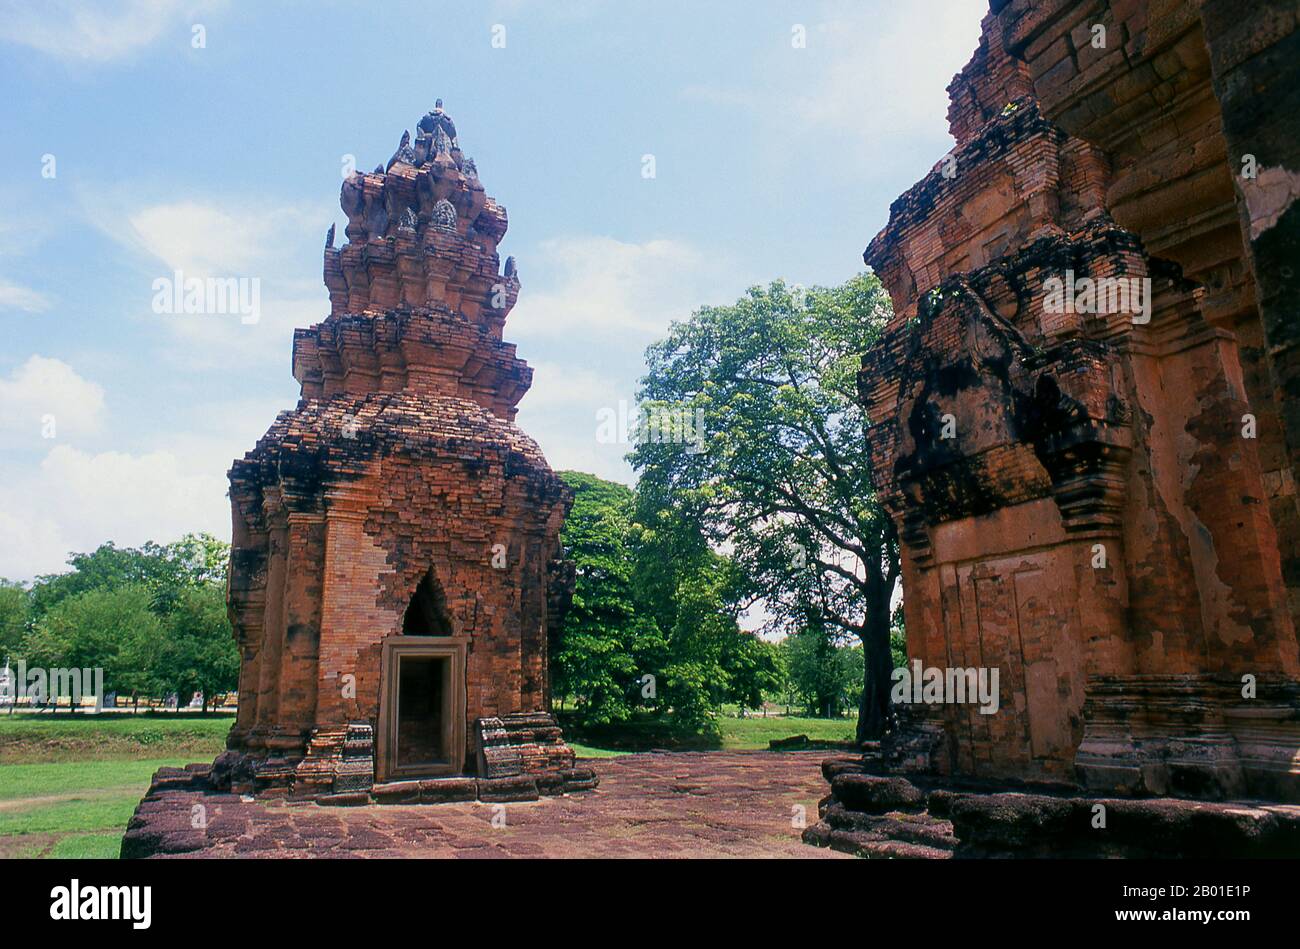 Thailand: Die Backsteinprangs von Prasat Sikhoraphum, Provinz Surin, Nordost-Thailand. Prasat Sikhoraphum ist ein Hindu-Tempel von Khmer, der im 12. Jahrhundert von König Suryavarman II. (R. 1113-1150) erbaut wurde. Prasat Sikhoraphum stammt aus dem frühen 12. Jahrhundert und wurde wunderschön restauriert. Es besteht aus fünf Steinprangs auf einer quadratischen Seitenplattform, die von Seeräuchen umgeben ist. Das Lintel und die Säulen des zentralen Prang sind wunderschön geschnitzt mit himmlischen Tänzern, oder apsara, und anderen Szenen aus der hinduistischen Mythologie. Stockfoto